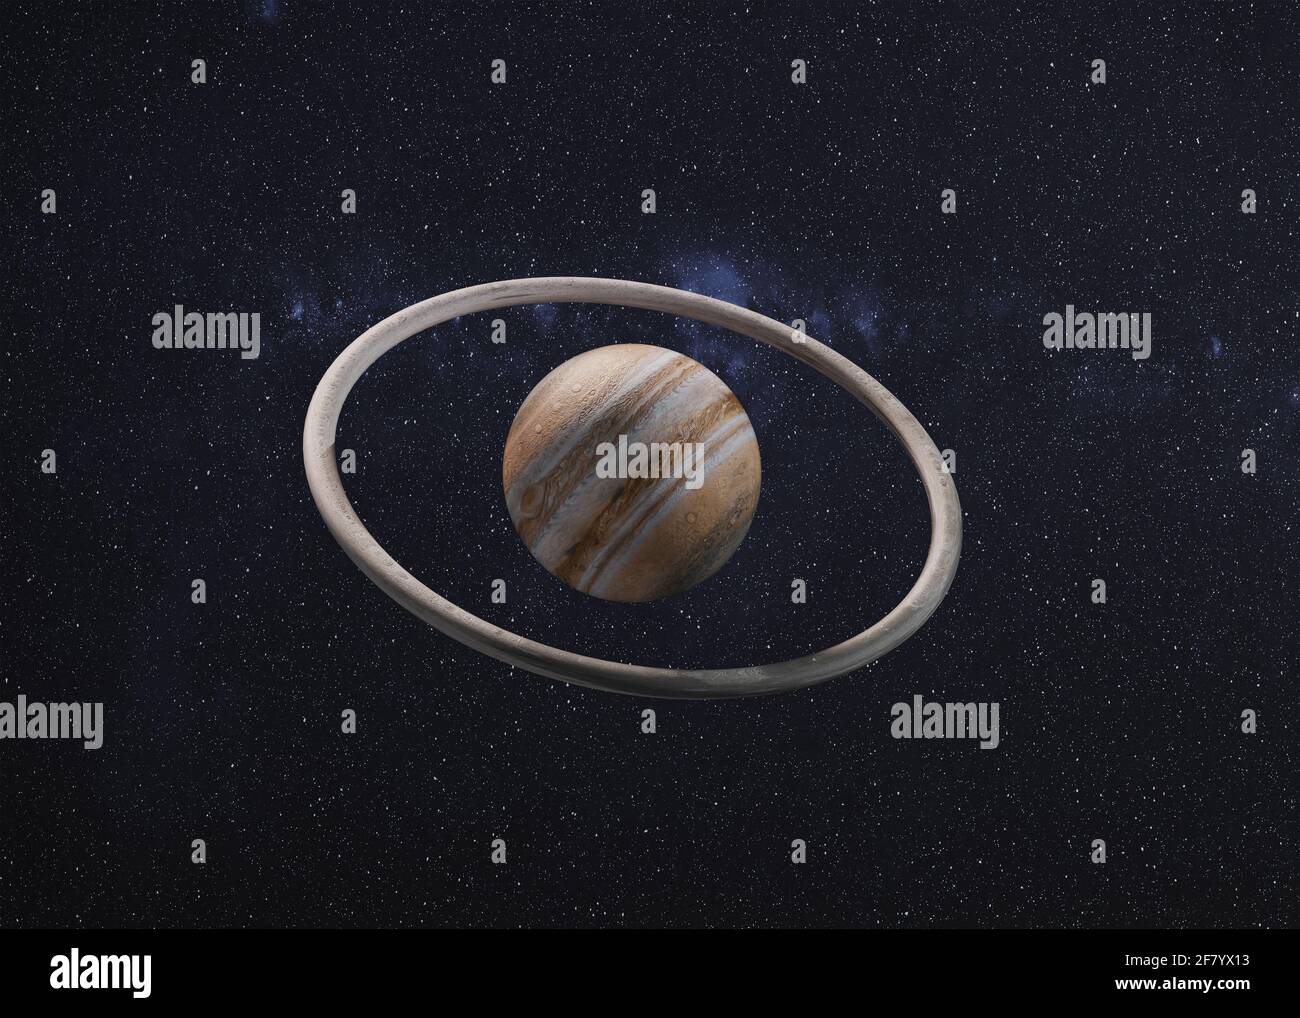 Fantastischer Jupiter-Planet mit Torusfelsen umringt. 3D-gerenderte Illustration. Elemente dieses Bildes, die von der NASA eingerichtet wurden. Stockfoto